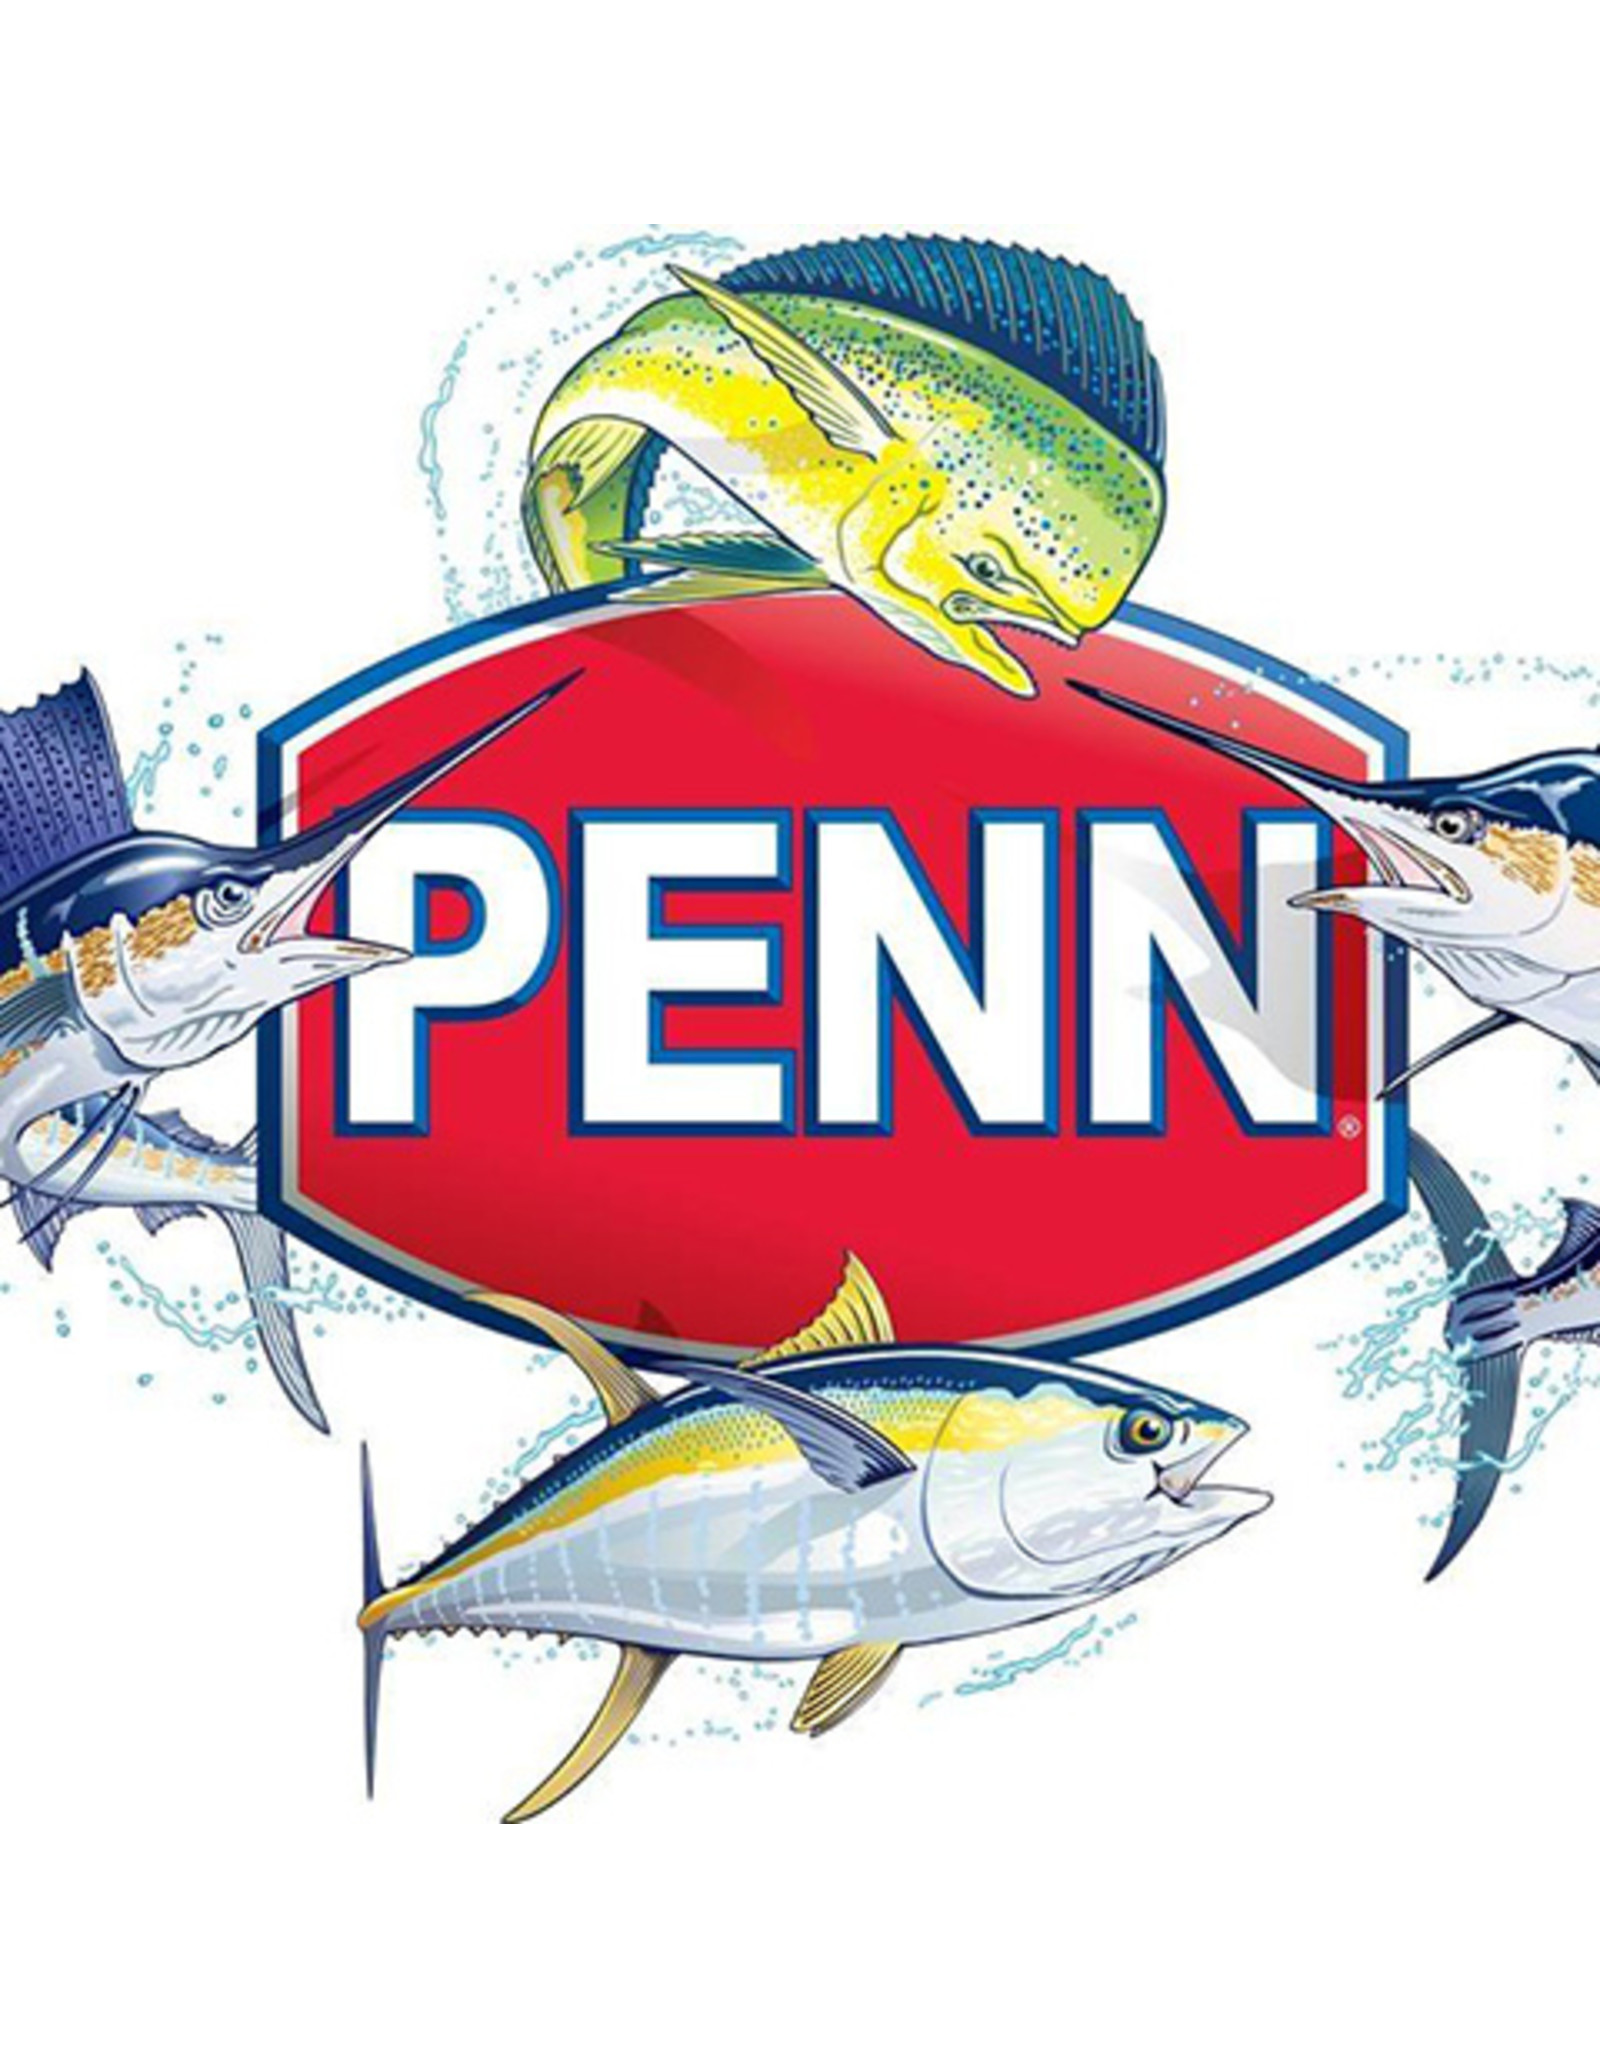 Penn 41-15KG  SPINDLE SPRING